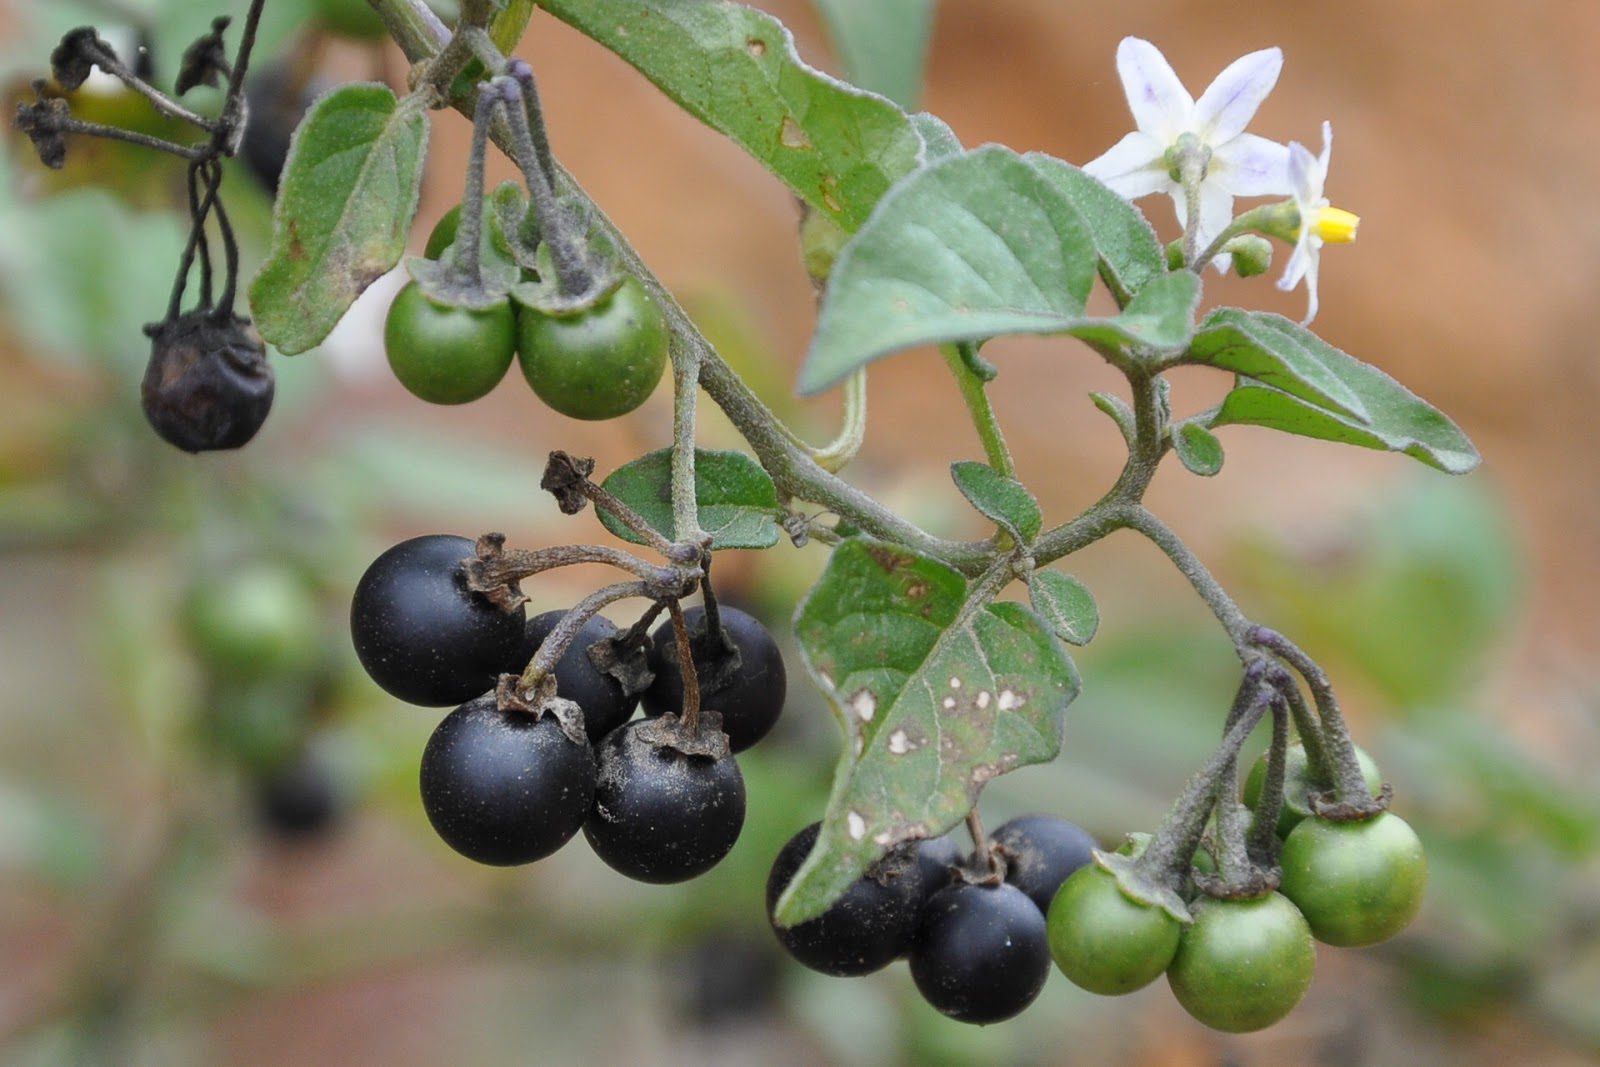 Паслен черный представители. Паслен санберри. Санберри ягода. Паслен черный (Solanum nigrum). Паслен Земляничный.